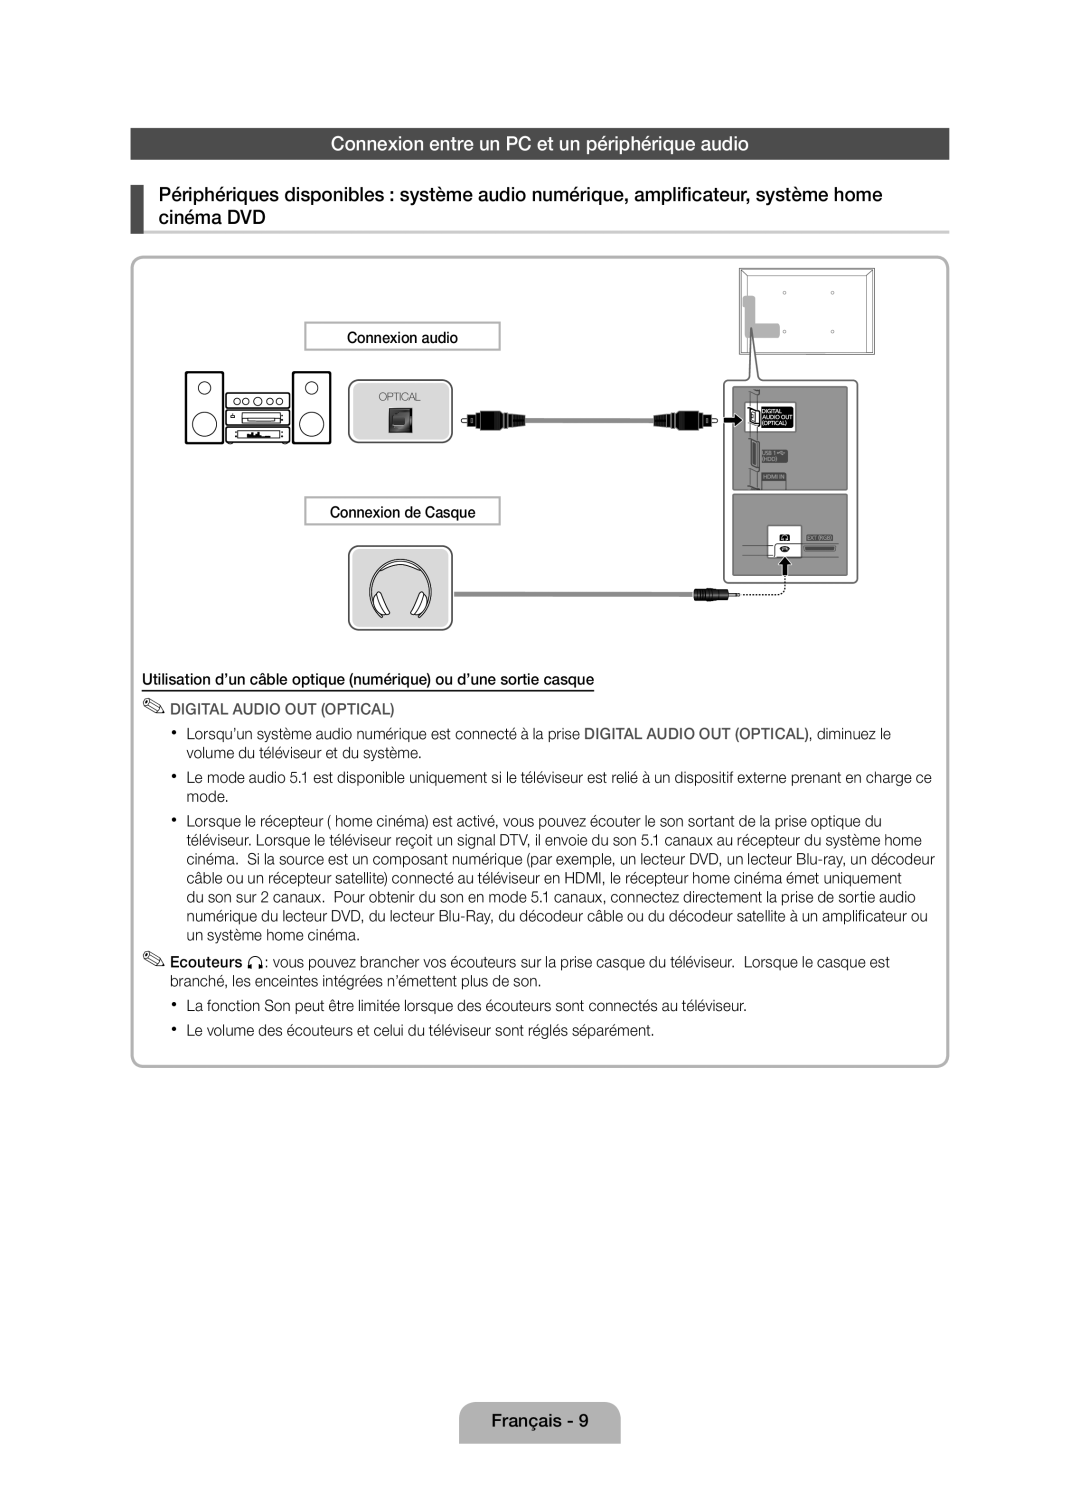 Samsung UE46D5000PWXZG, UE40D5000PWXTK manual Connexion entre un PC et un périphérique audio, Digital Audio Out Optical 